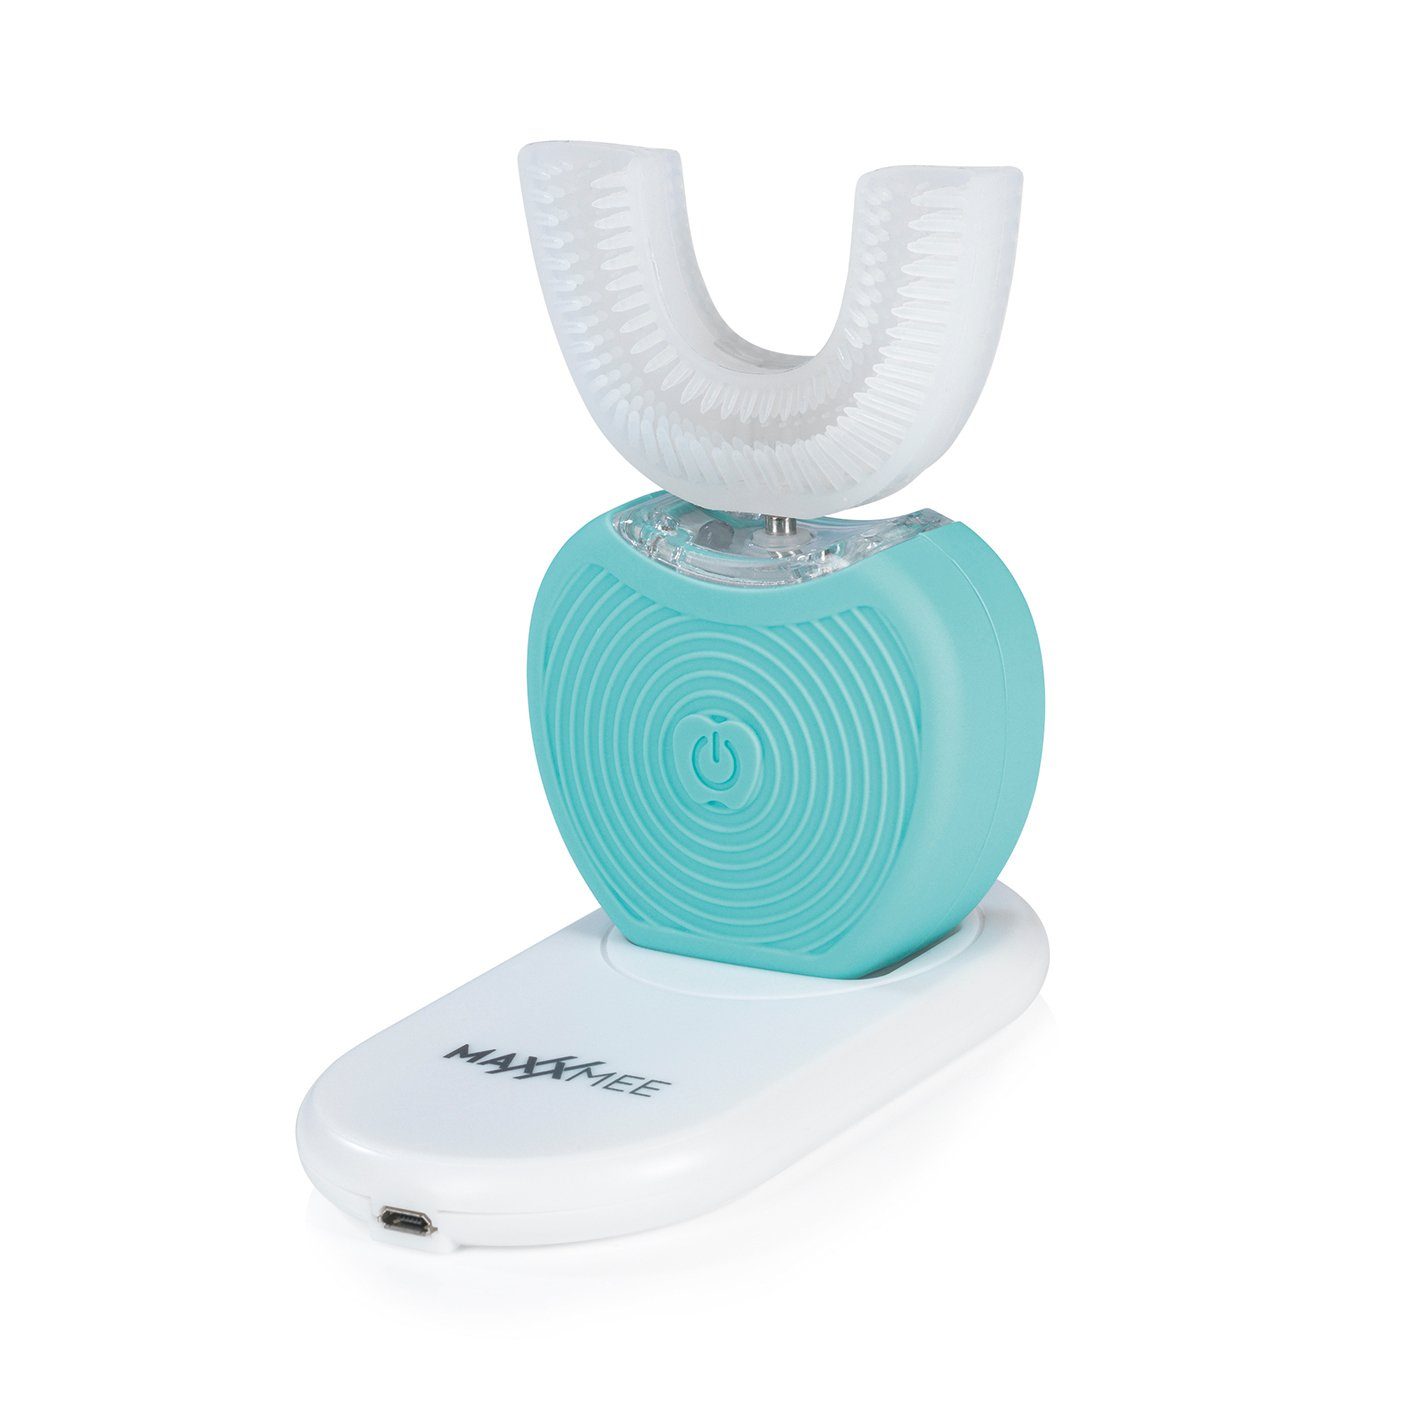 MAXXMEE Schallzahnbürste, 360 Grad Borsten mit Vibrationsfunktion  weiß/türkis, Sanfte Vibrationsmassage und -pflege des Zahnfleischs